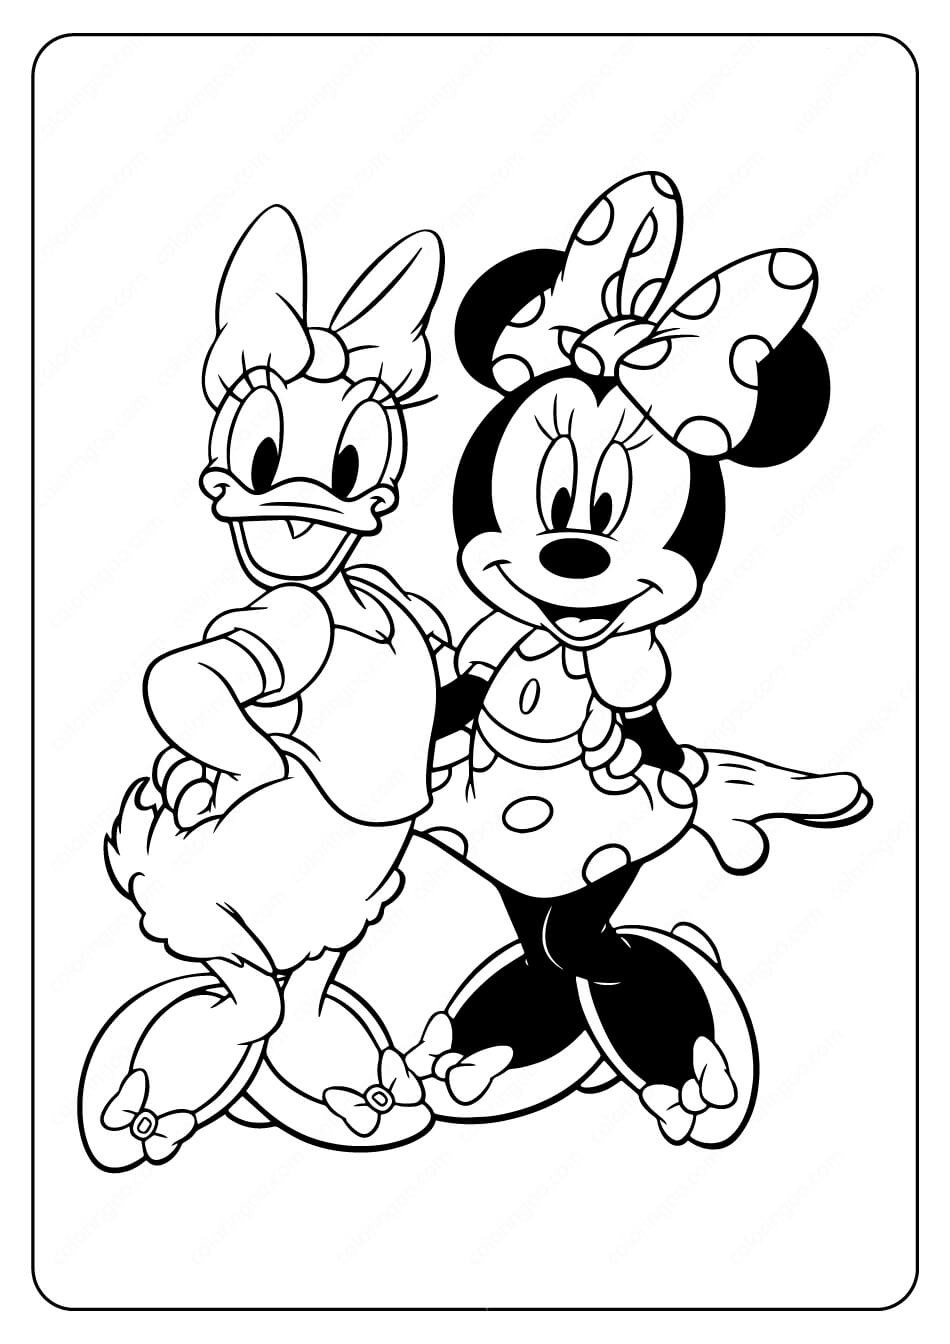 Dibujos de Mickey Mouse y Daisy Duck Disney para colorear